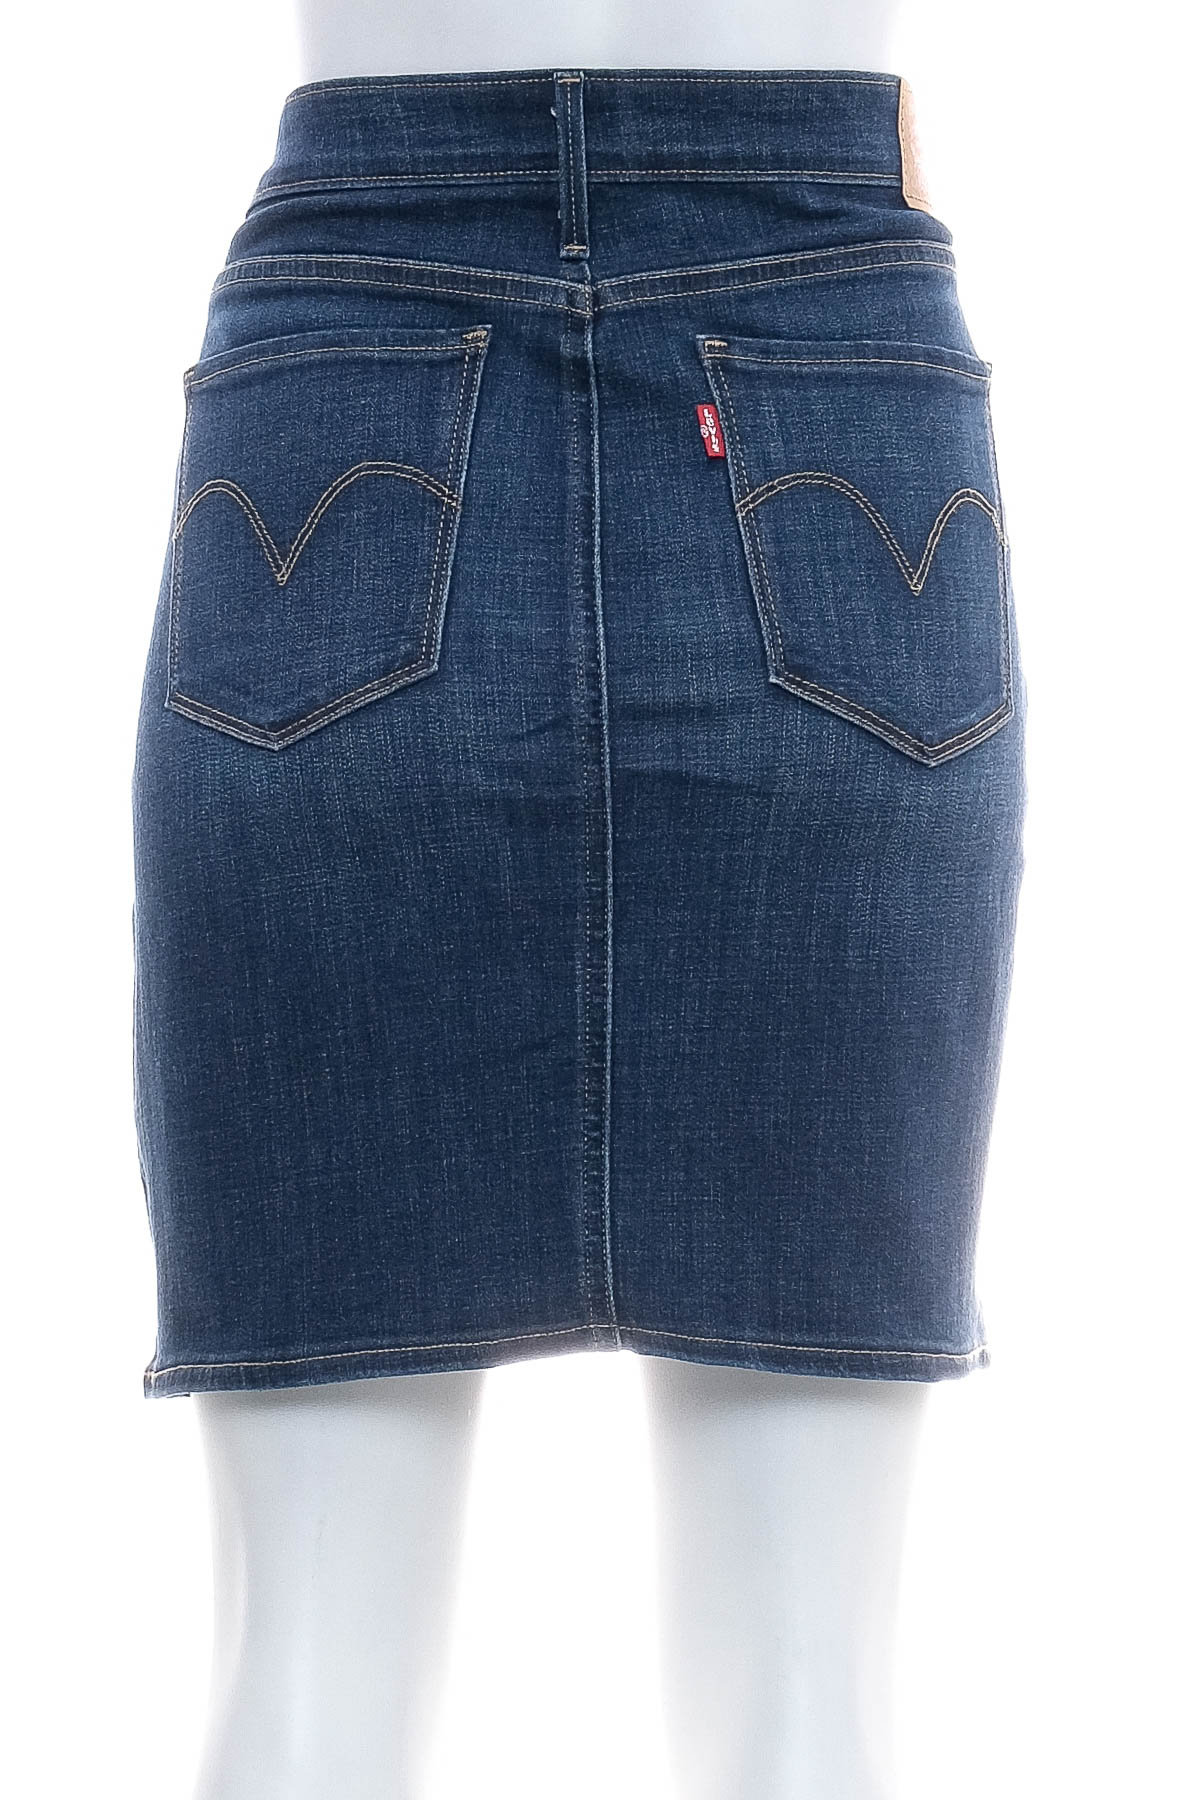 Spódnica jeansowa - Levi Strauss & Co. - 1